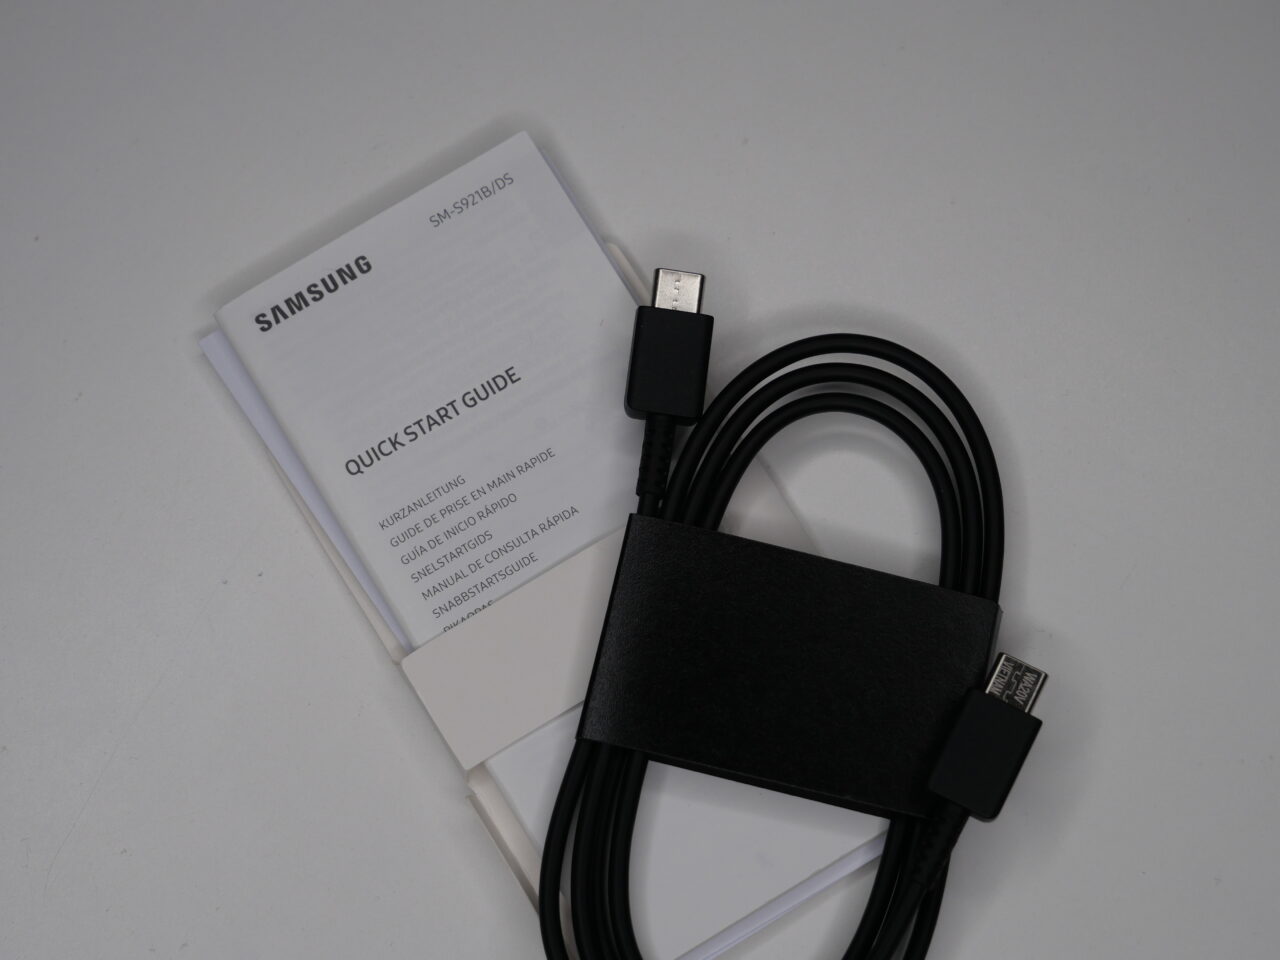 Czarny kabel USB z organizerem z czarnej skóry i skrócona instrukcja obsługi Samsung.